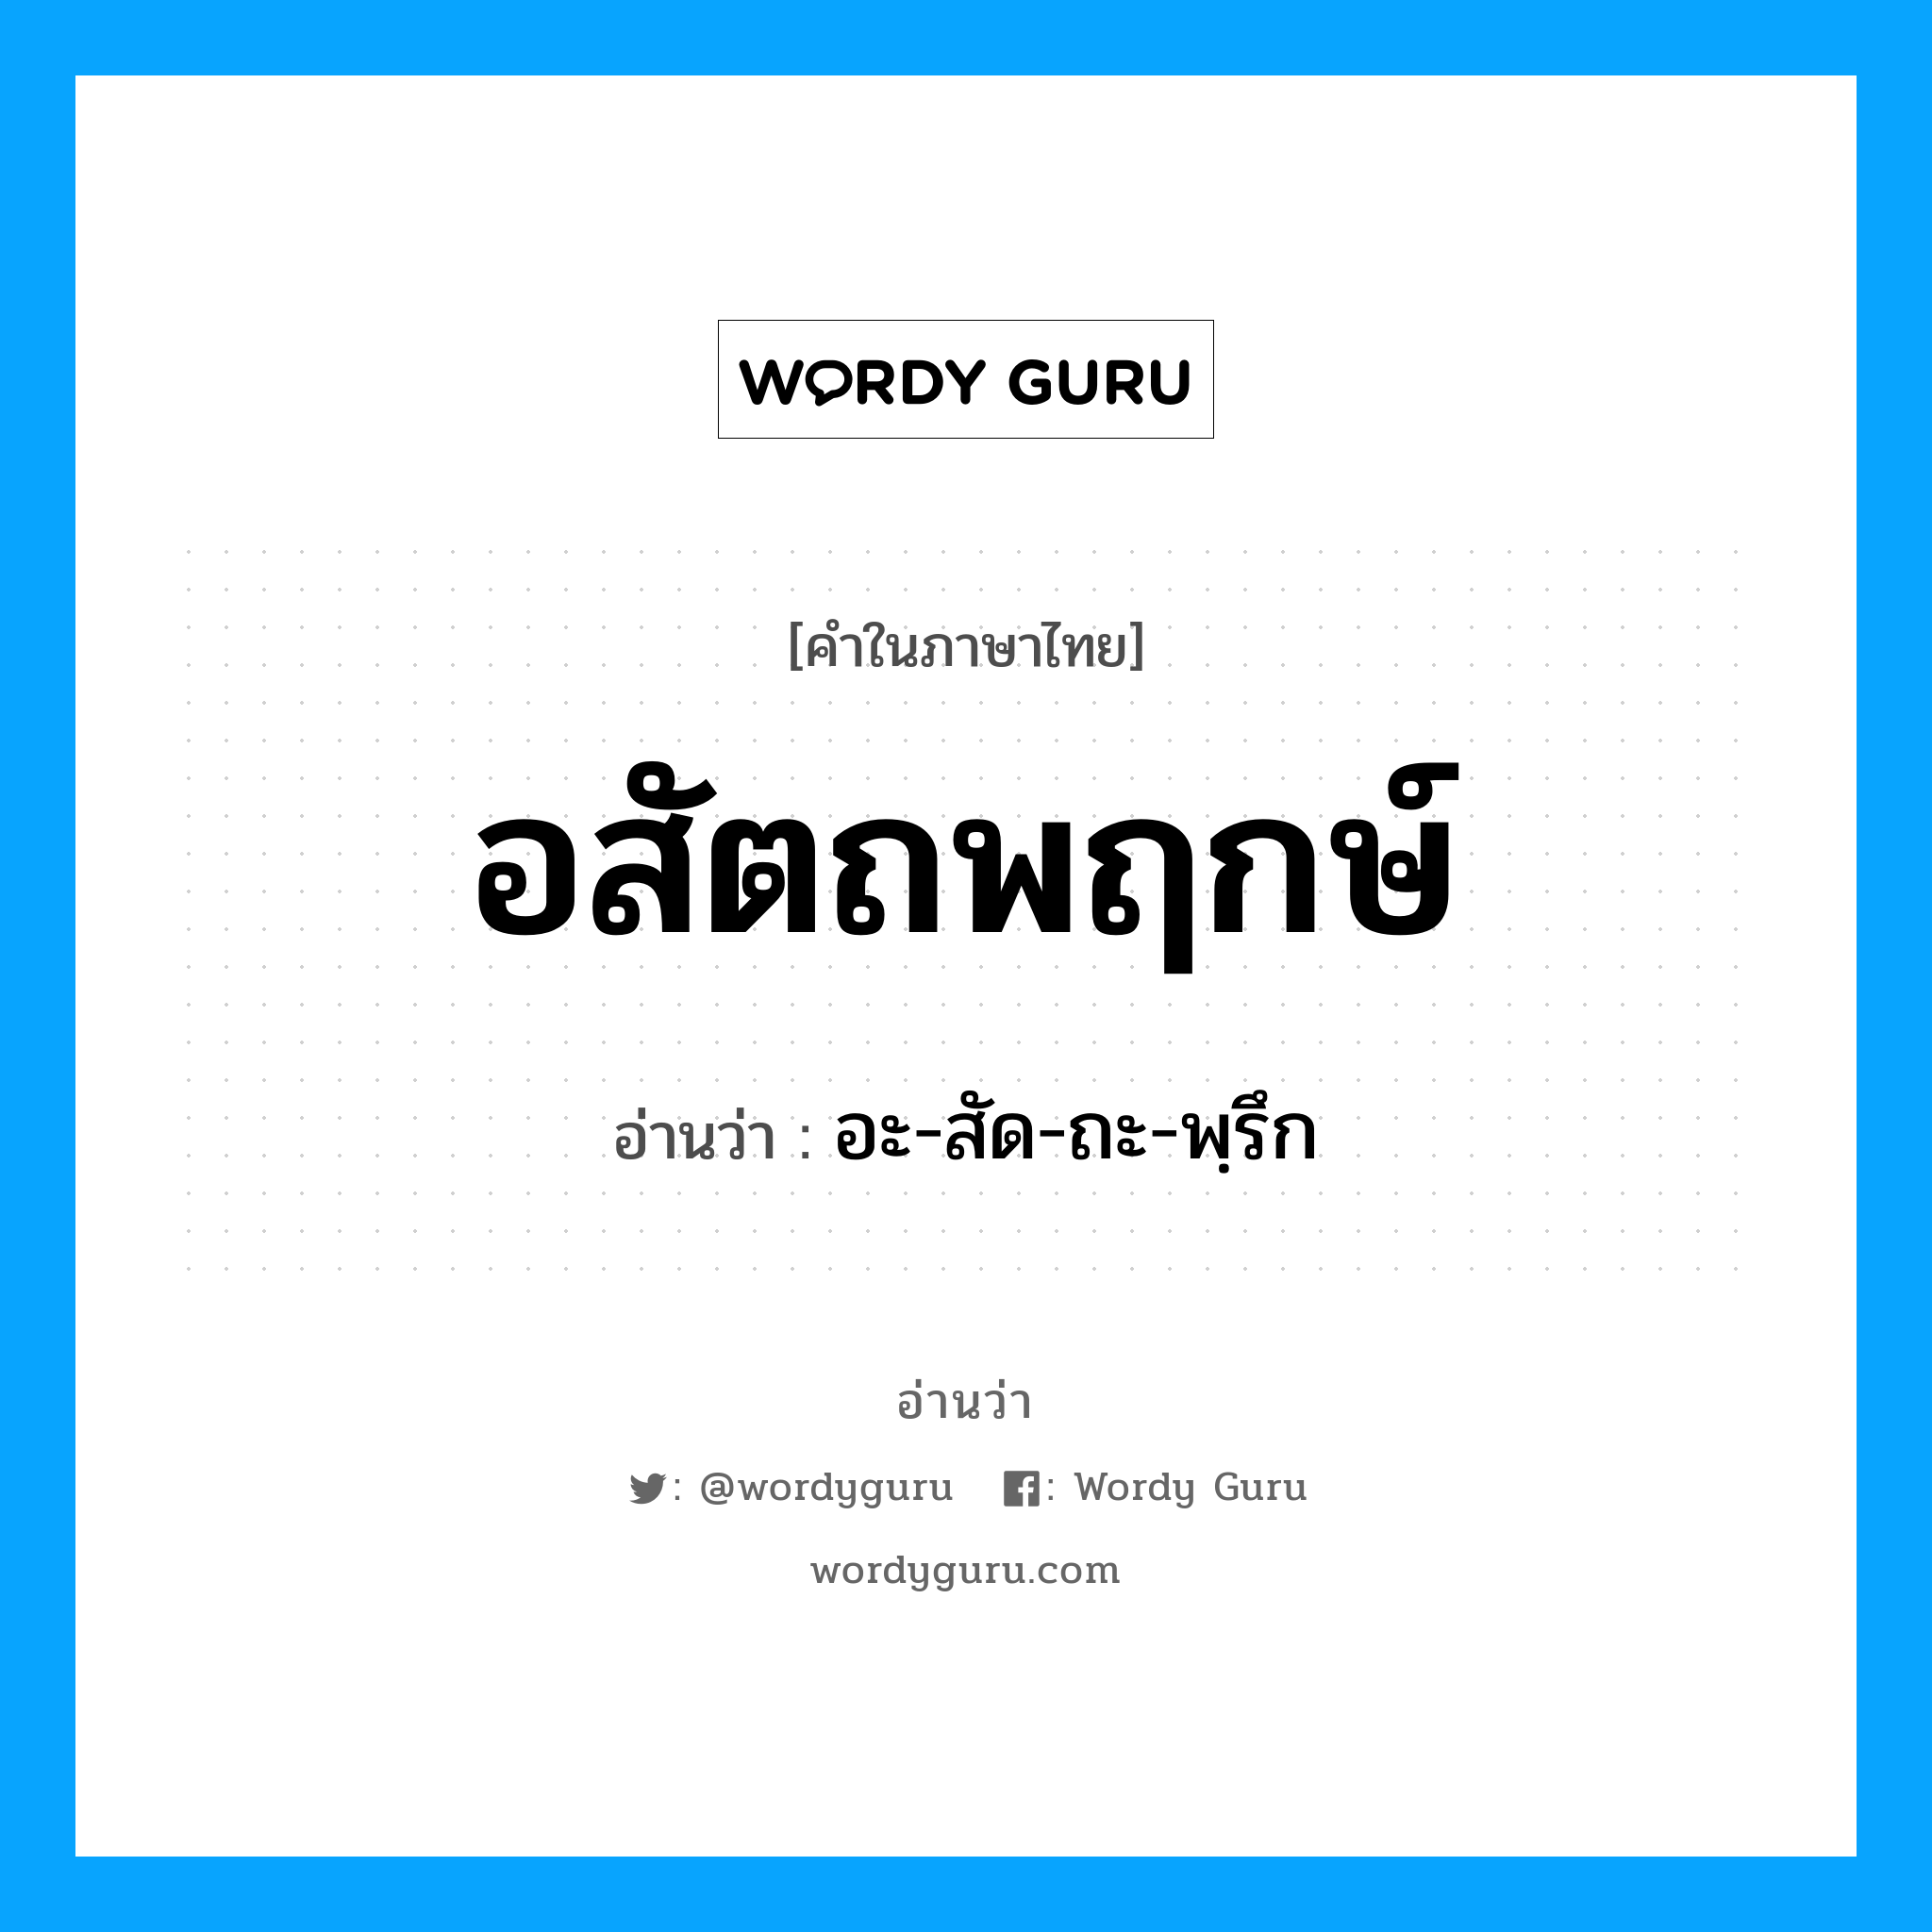 อะ-สัด-ถะ-พฺรึก เป็นคำอ่านของคำไหน?, คำในภาษาไทย อะ-สัด-ถะ-พฺรึก อ่านว่า อสัตถพฤกษ์